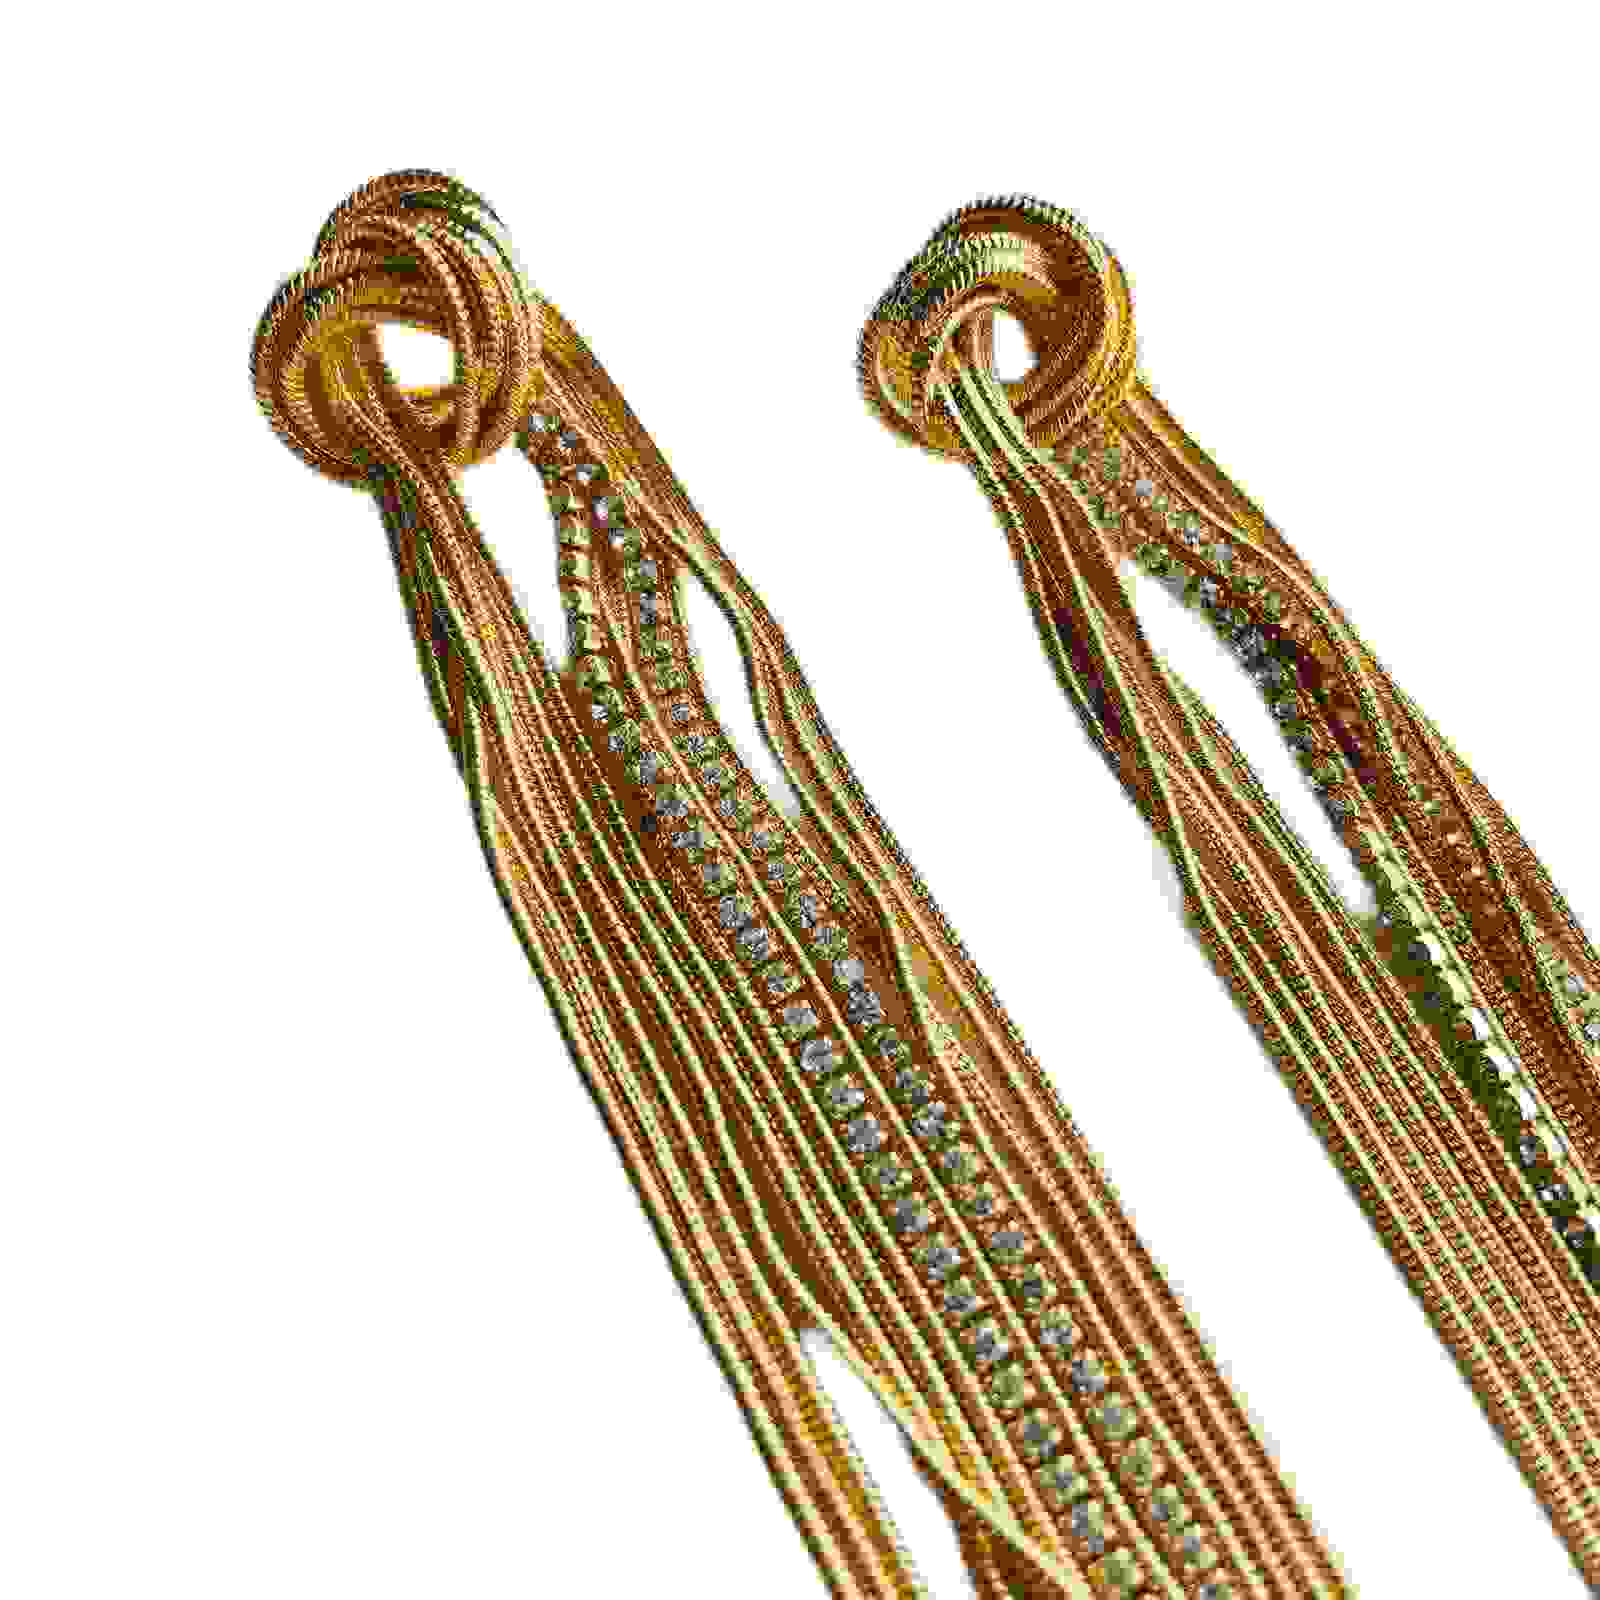 Tassel Earrings For Girls - Long Hanging Earrings - Fashion Jewellery